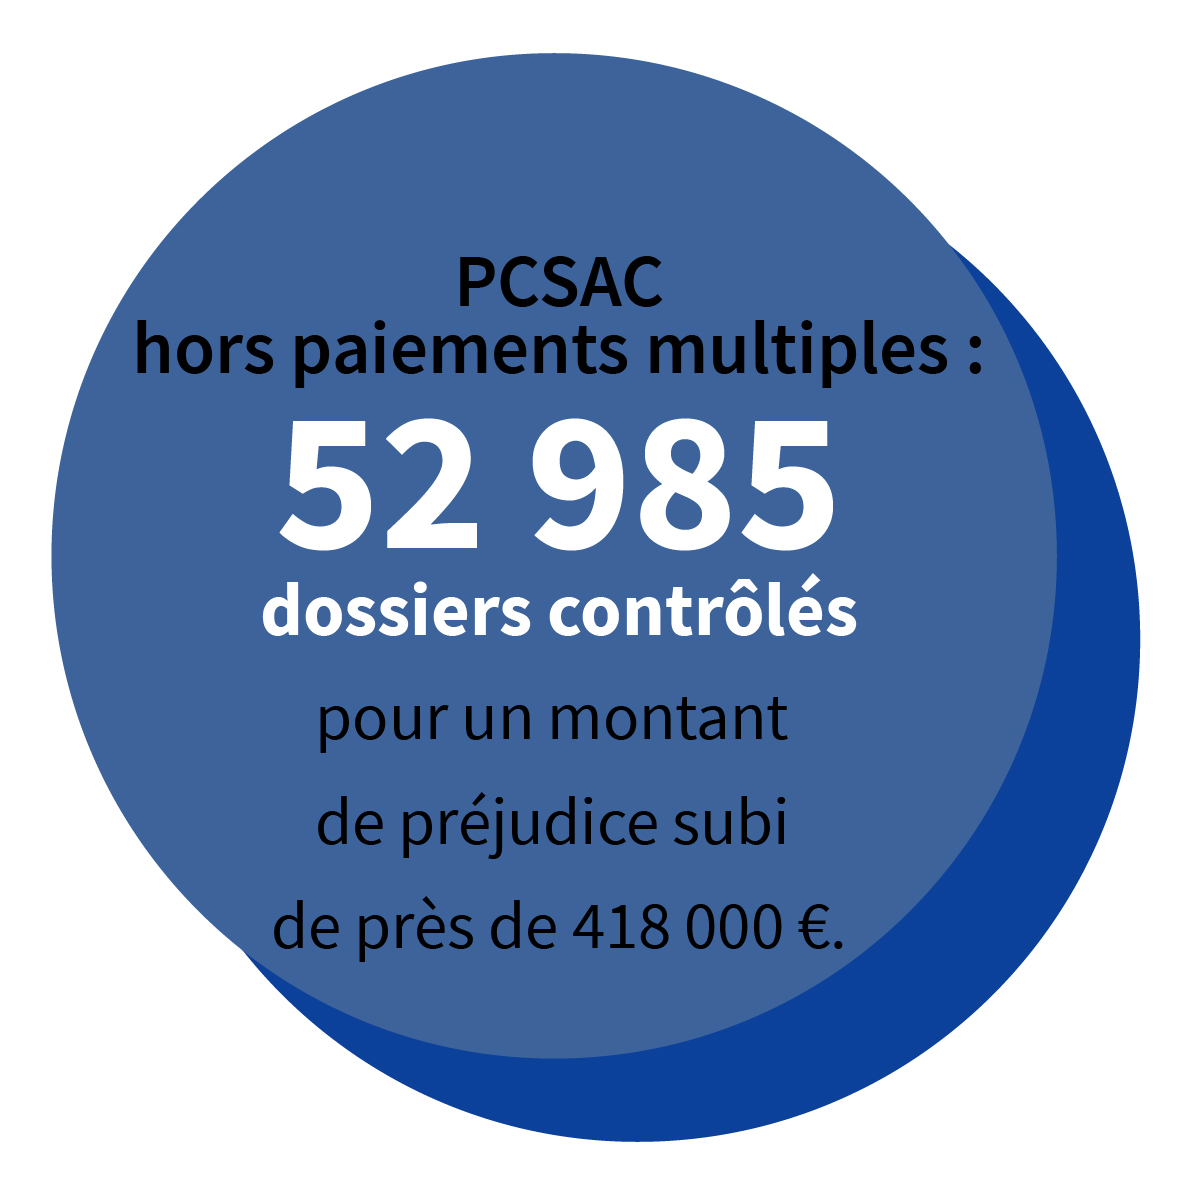 PCSAC hors paiements multiples : 52 985 dossiers contrôlés pour un montant de préjudice subi de près de 418 000 €.